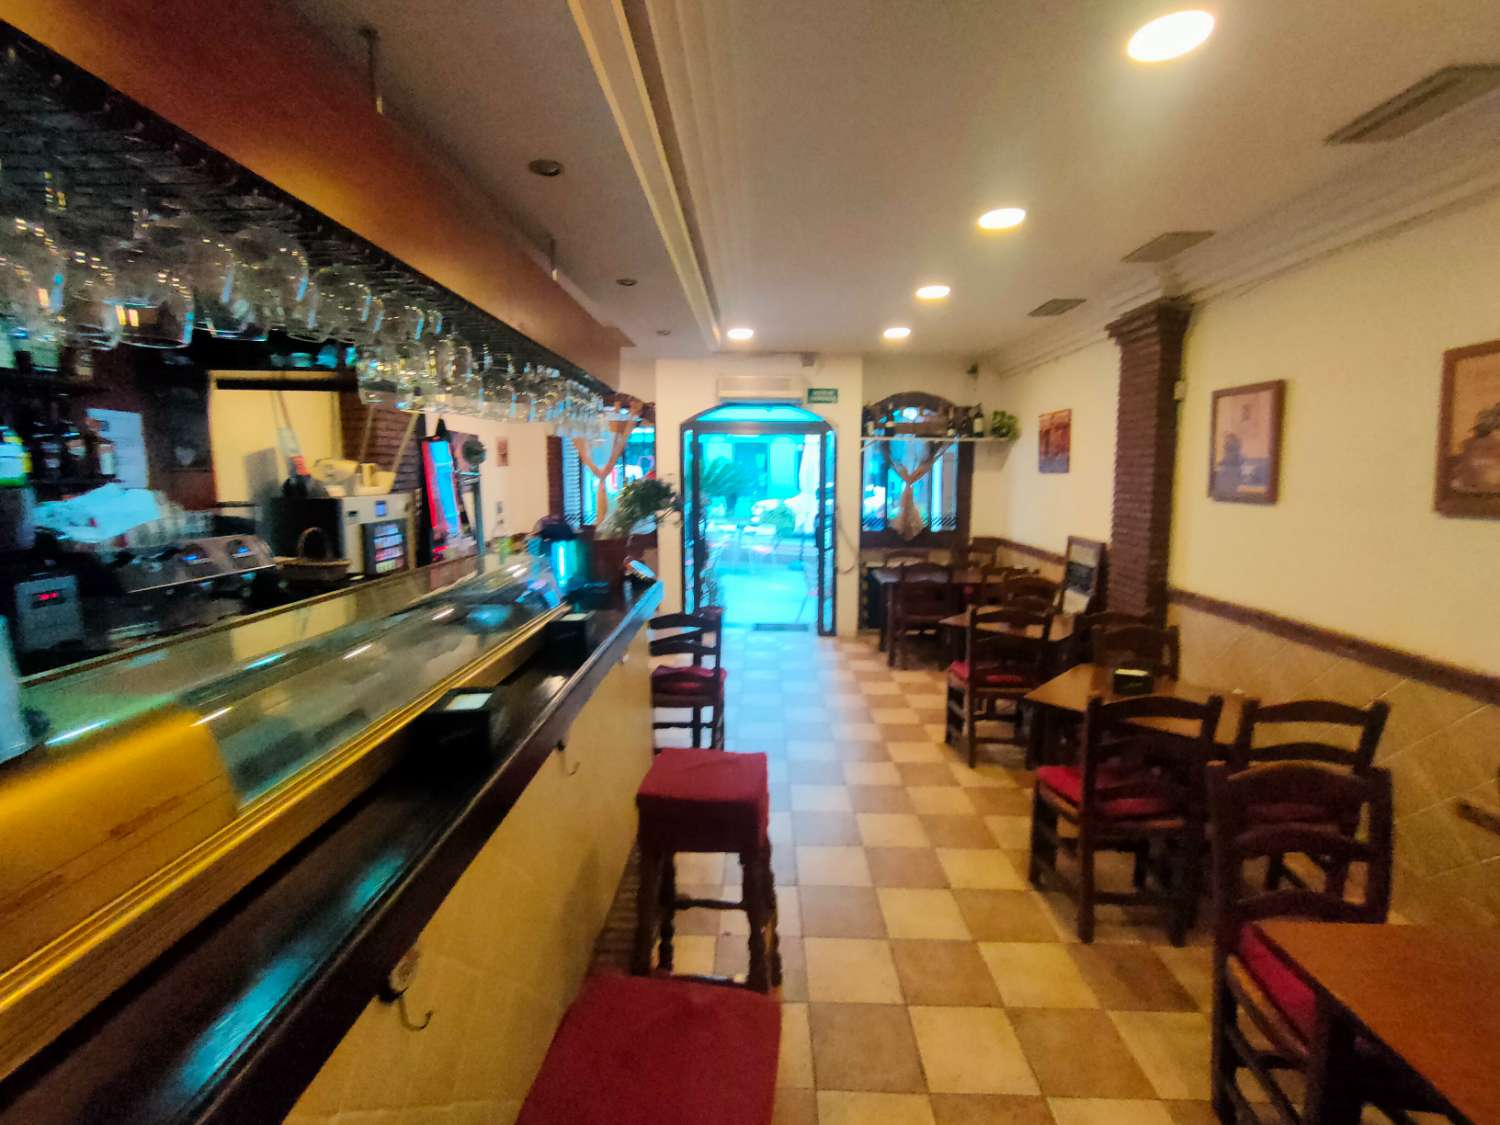 Bistro Cafe Bar Bistro for sale in Arroyo de la Miel, Benalmadena Costa del Sol - AREA PRIME